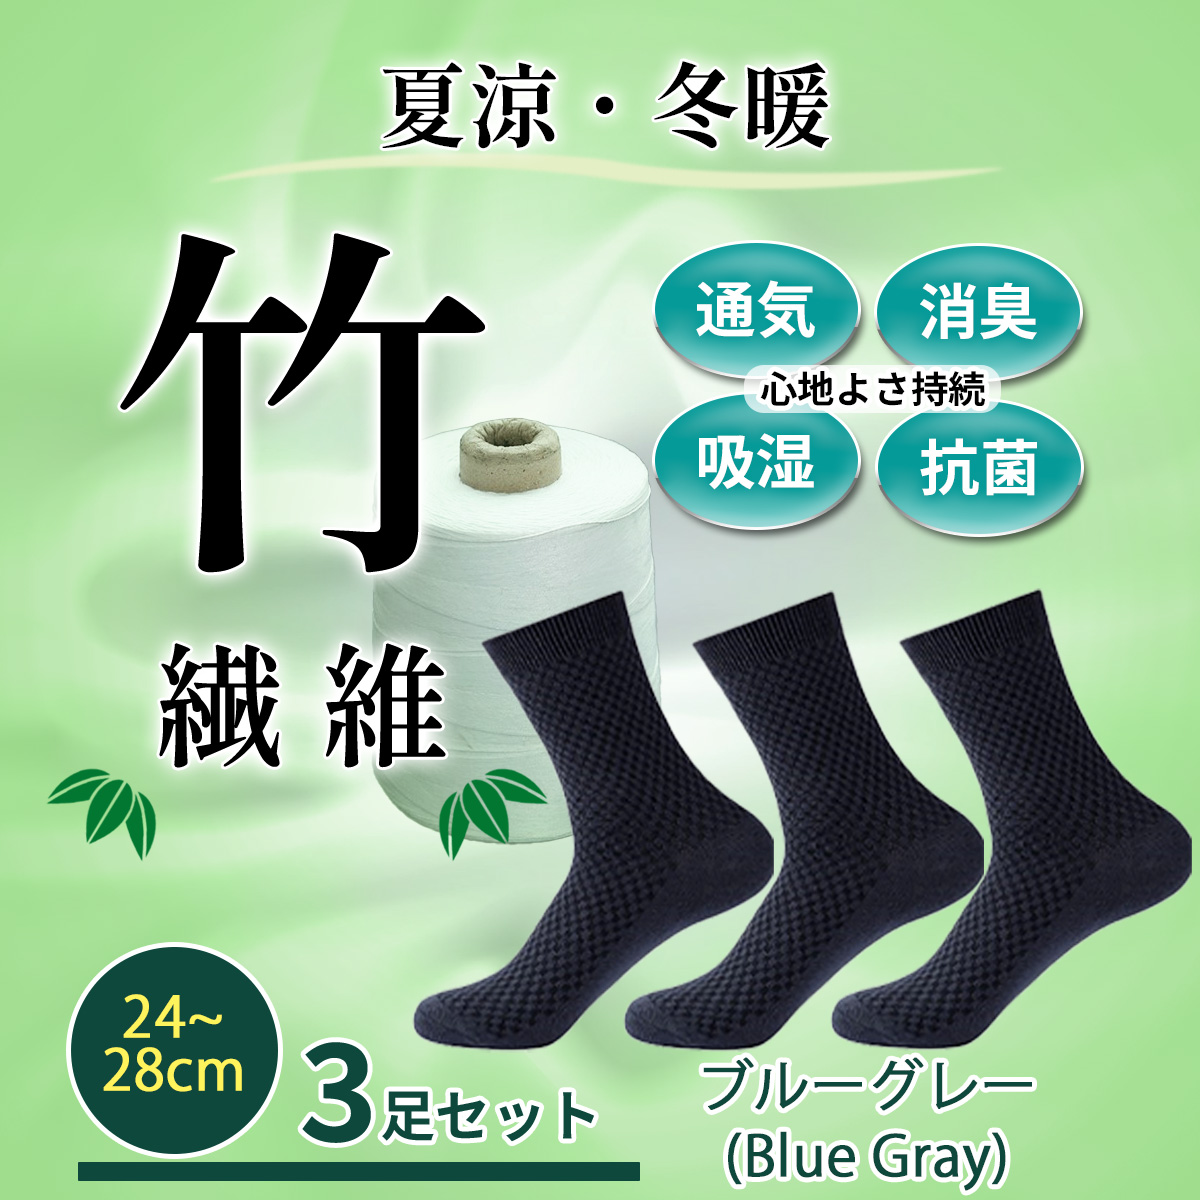 靴下 メンズ ソックス ビジネスソックス 3足セット 消臭 竹 繊維 24cm〜28cm